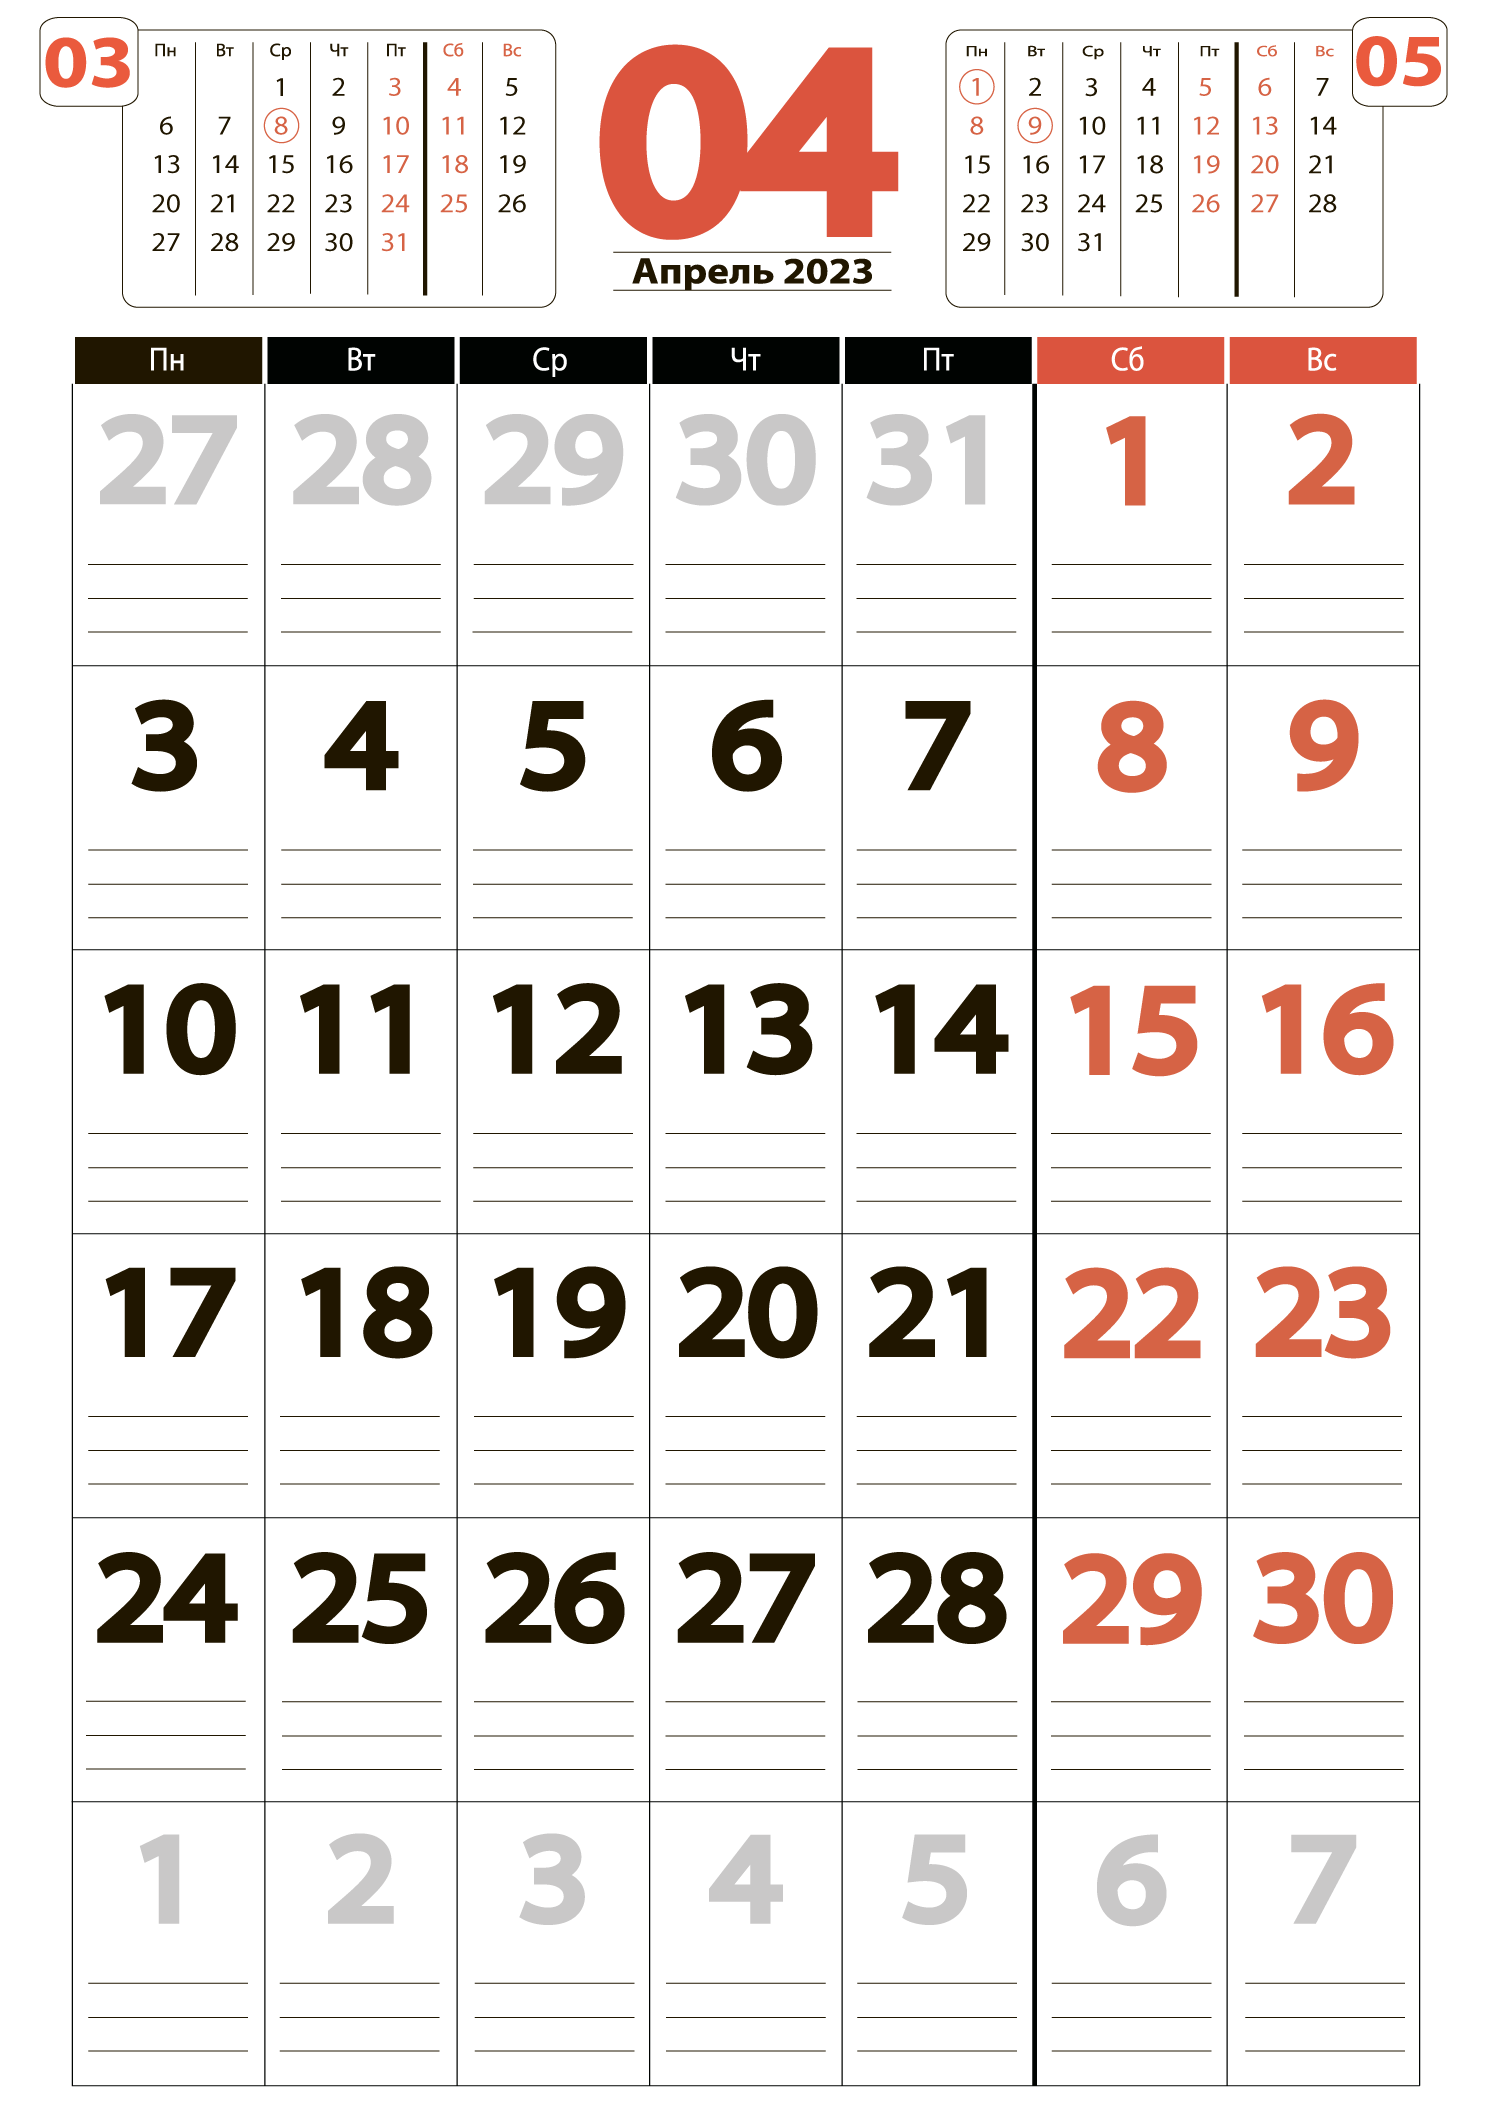 Календарь на апрель 2023 - скачать